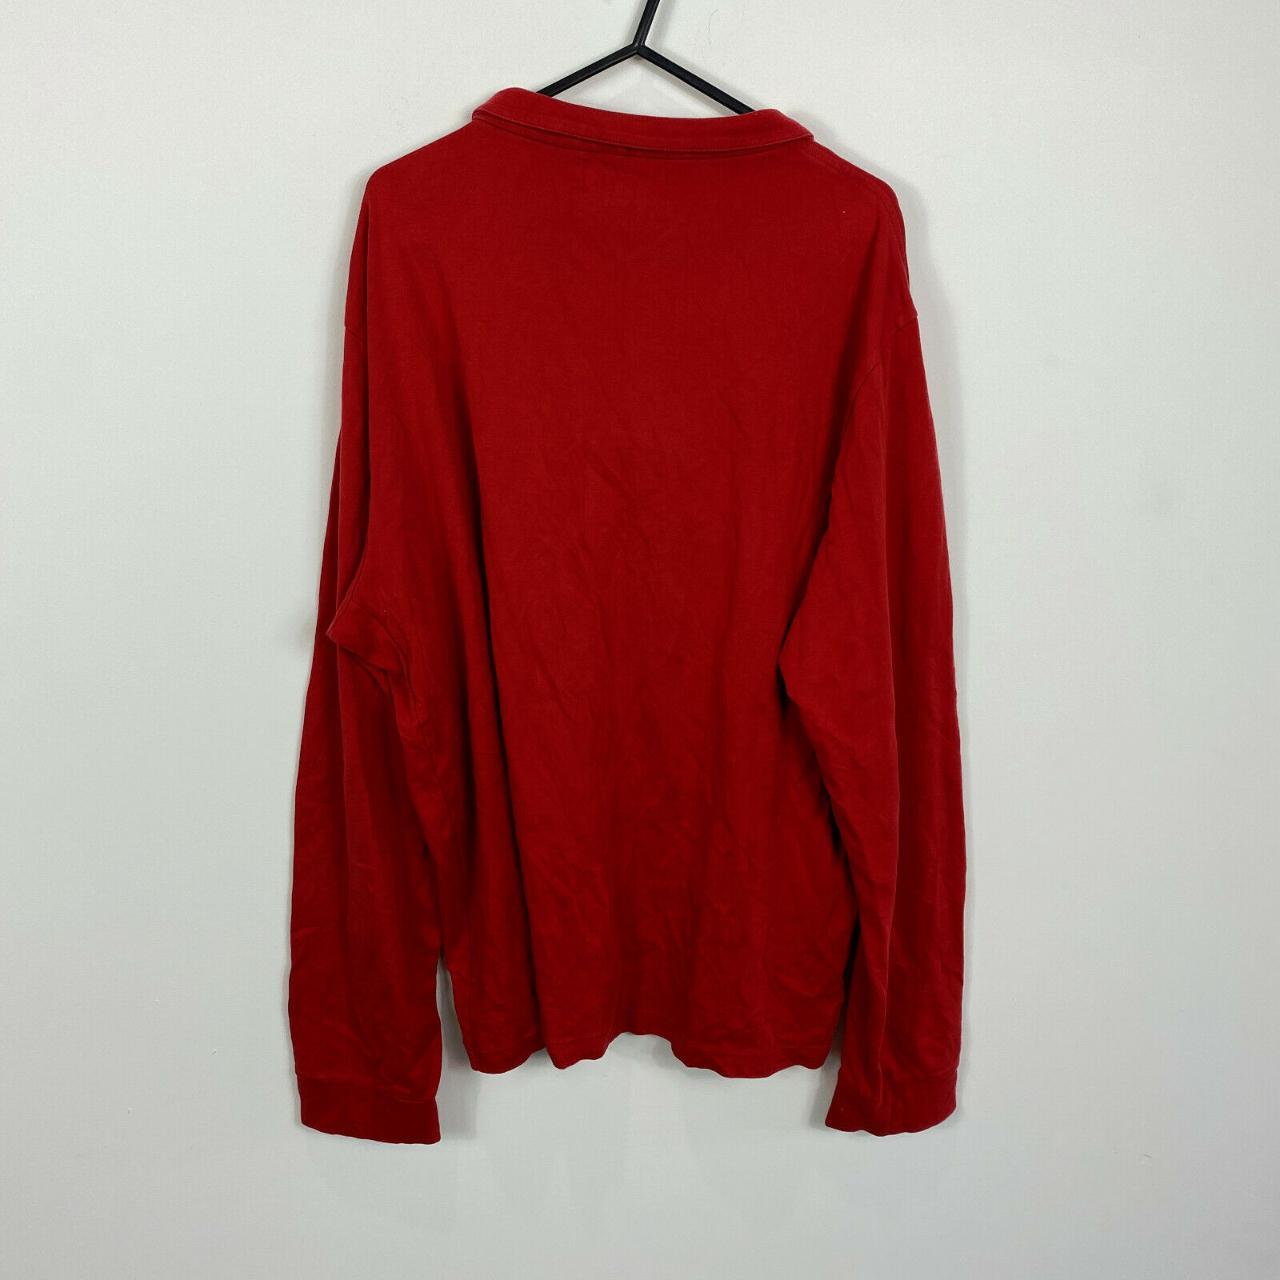 Polo Ralph Lauren 1/4 Zip Sweatshirt Mens Size XL... - Depop